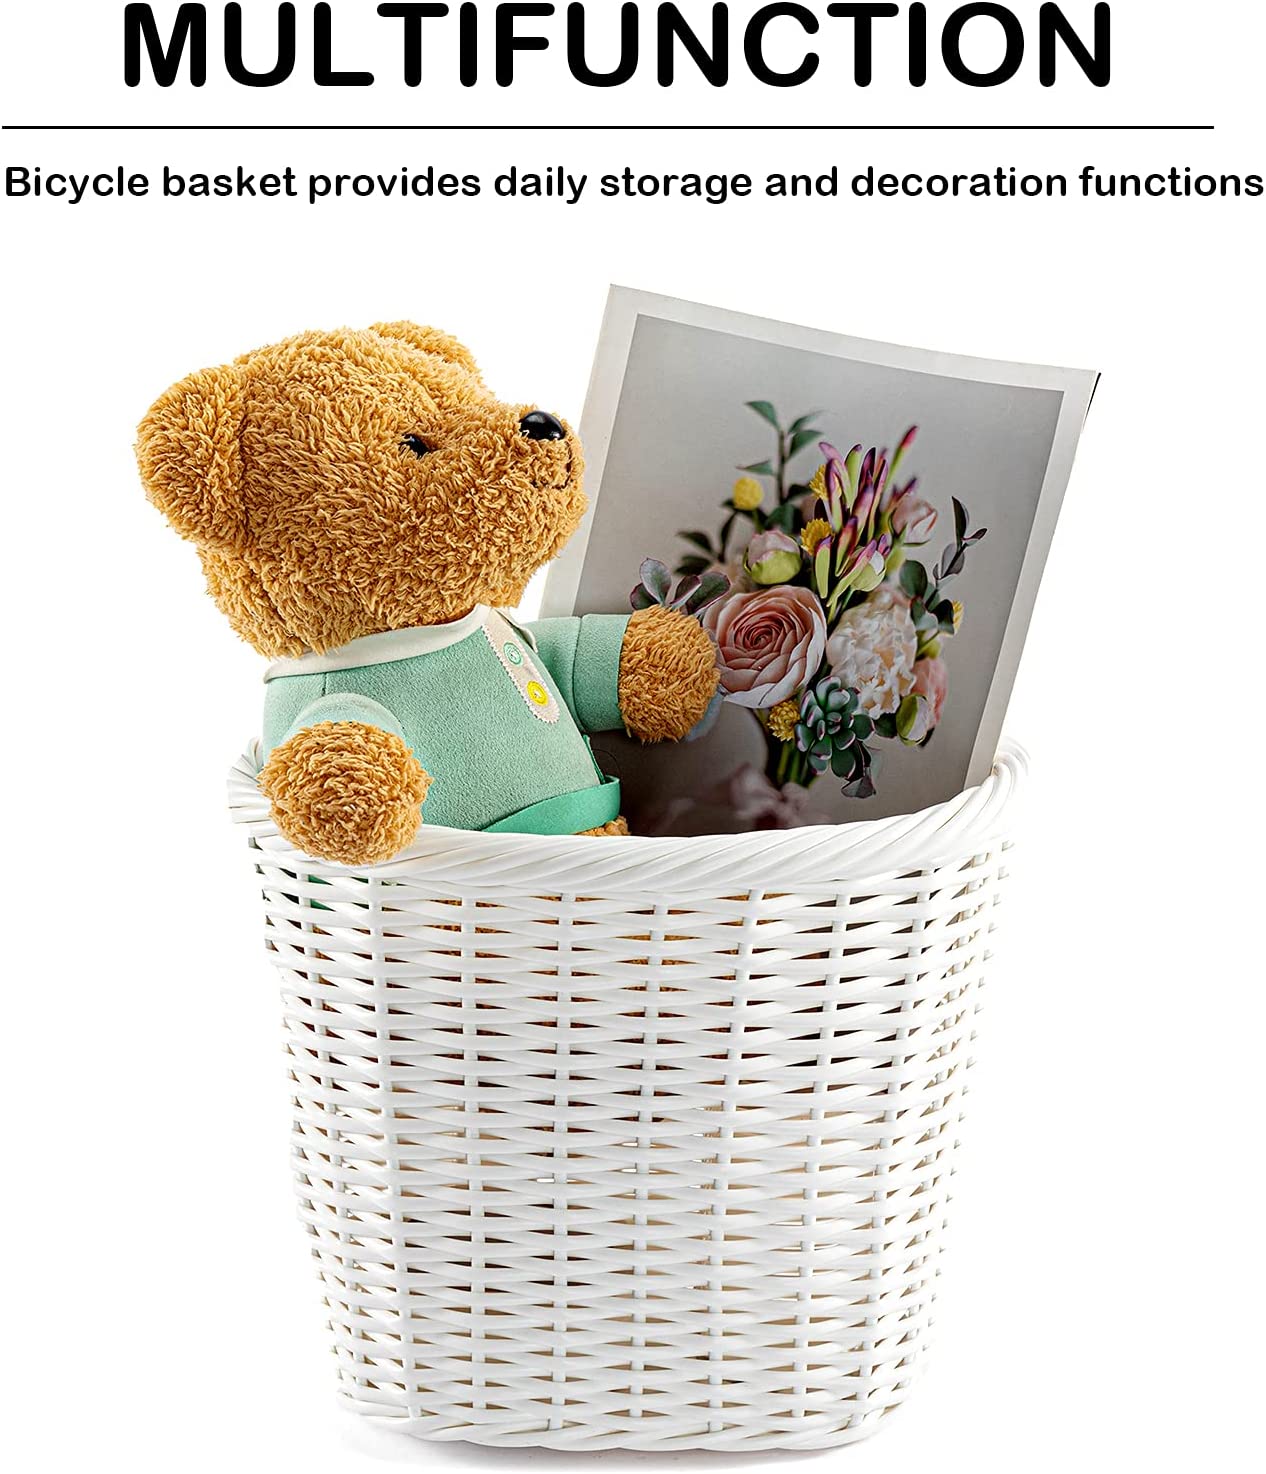 Hycline Bike Basket Front Handlebar Storage Basket for Adult and Kids